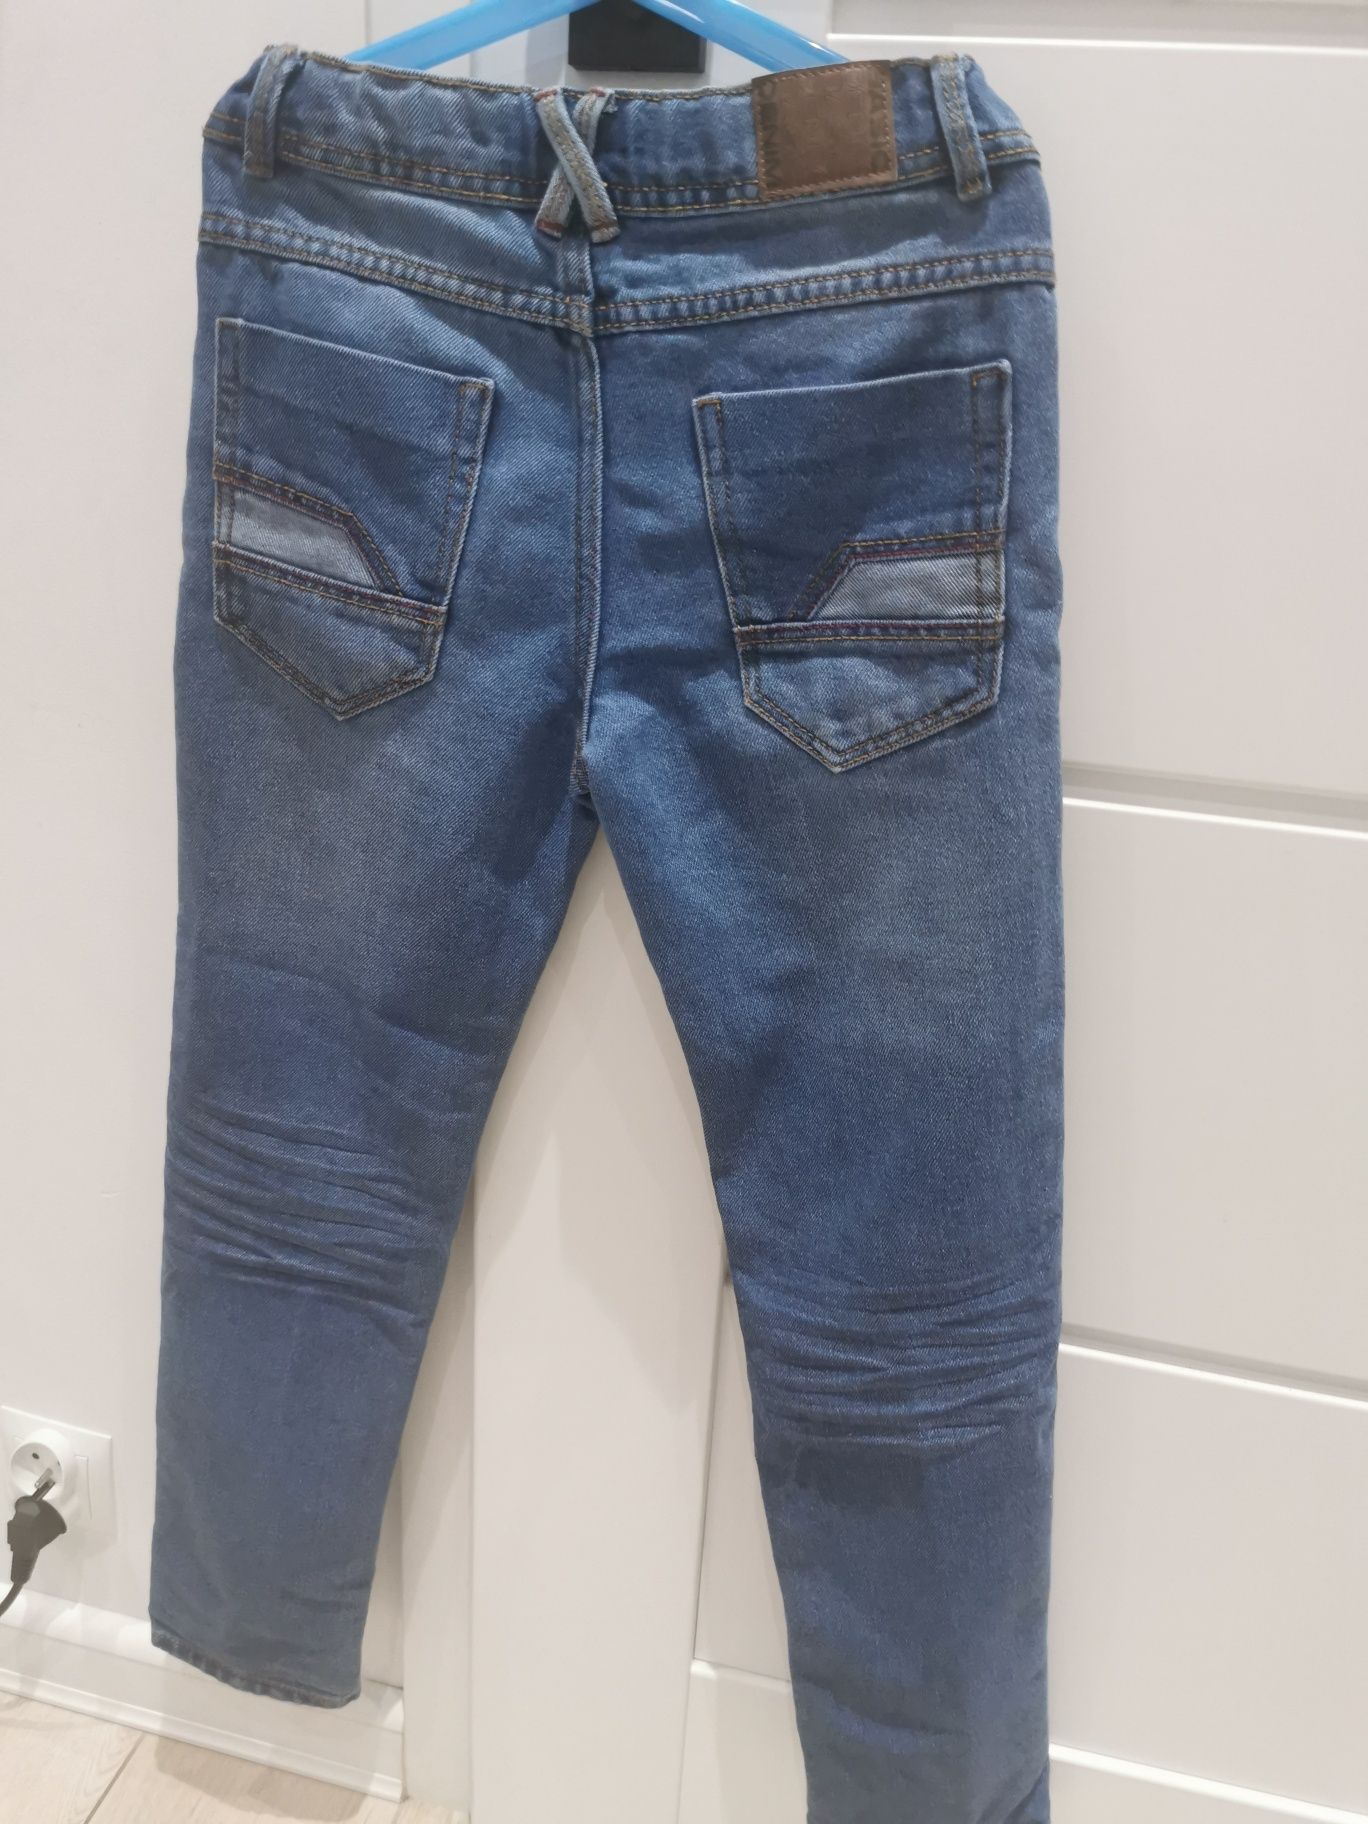 Spodnie jeansowe chłopięce inextenso r. 146 cm